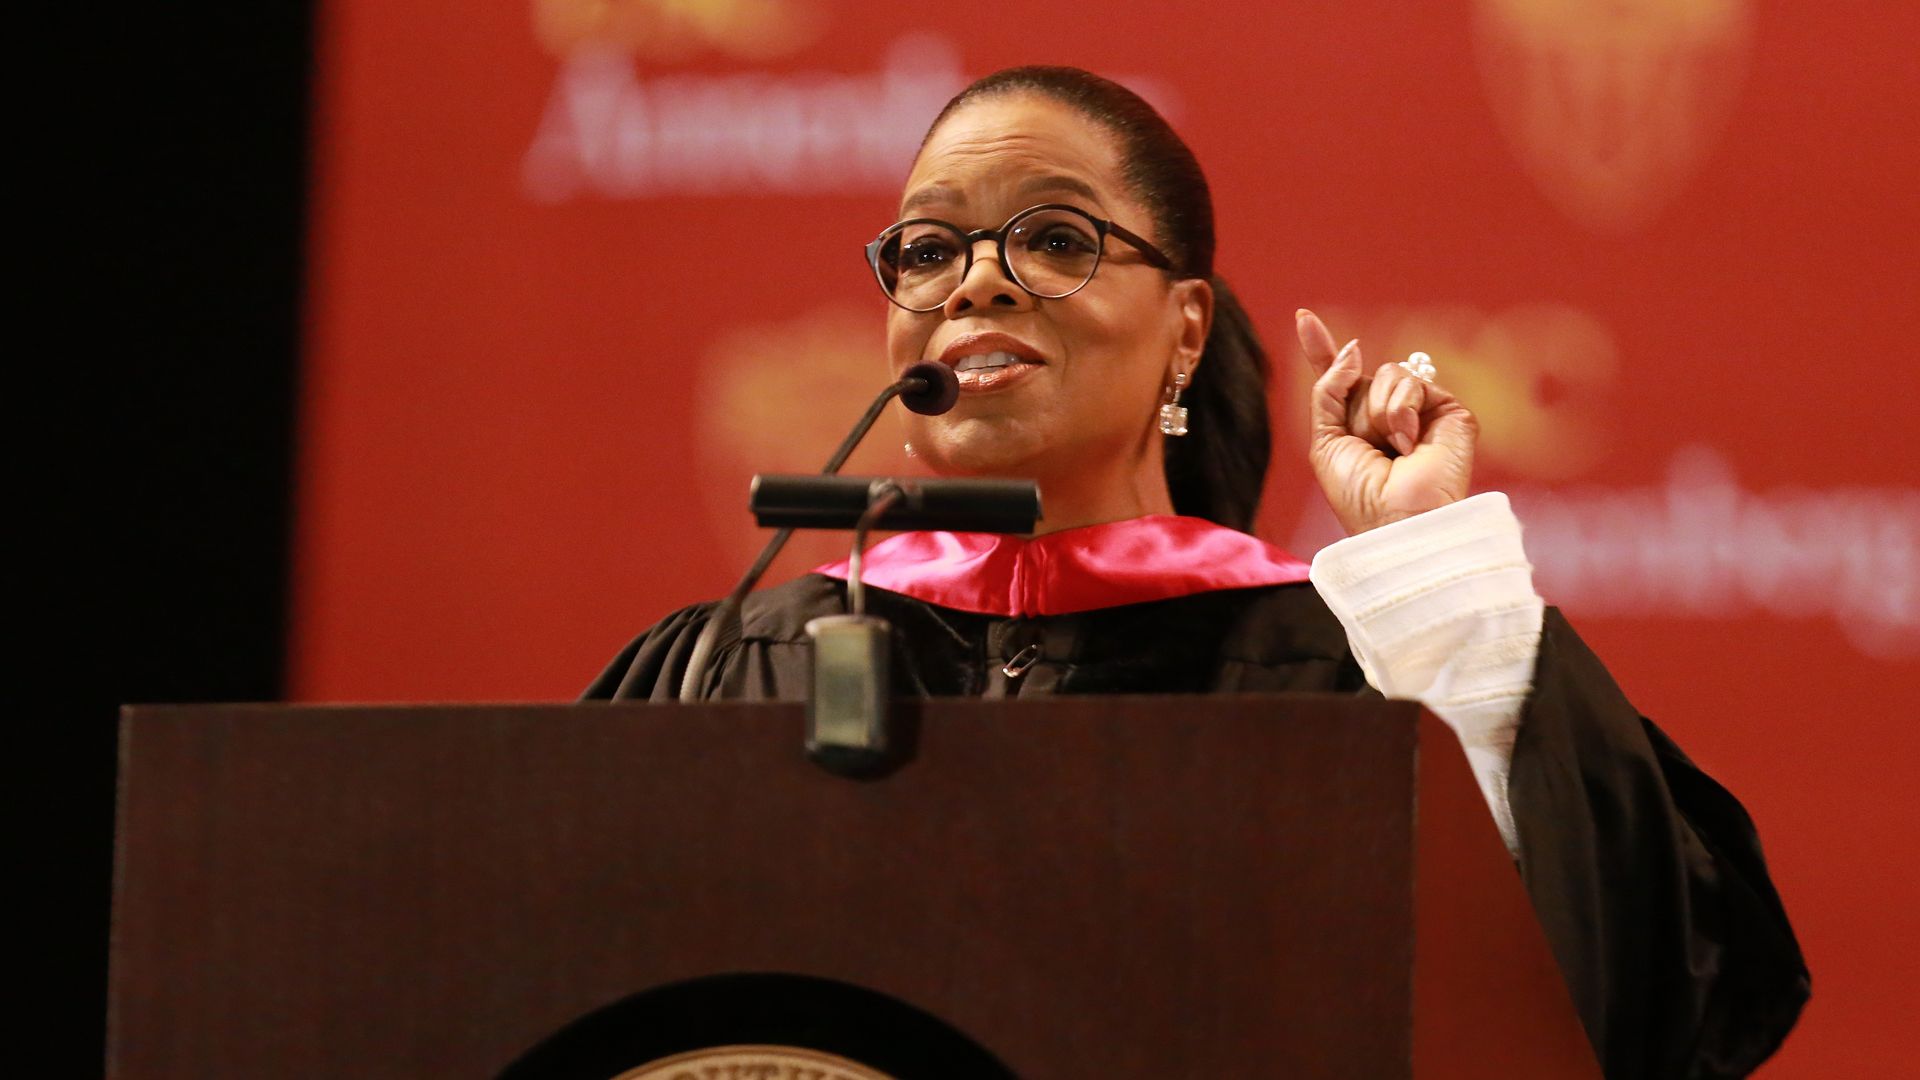 Oprah behind the podium at USC